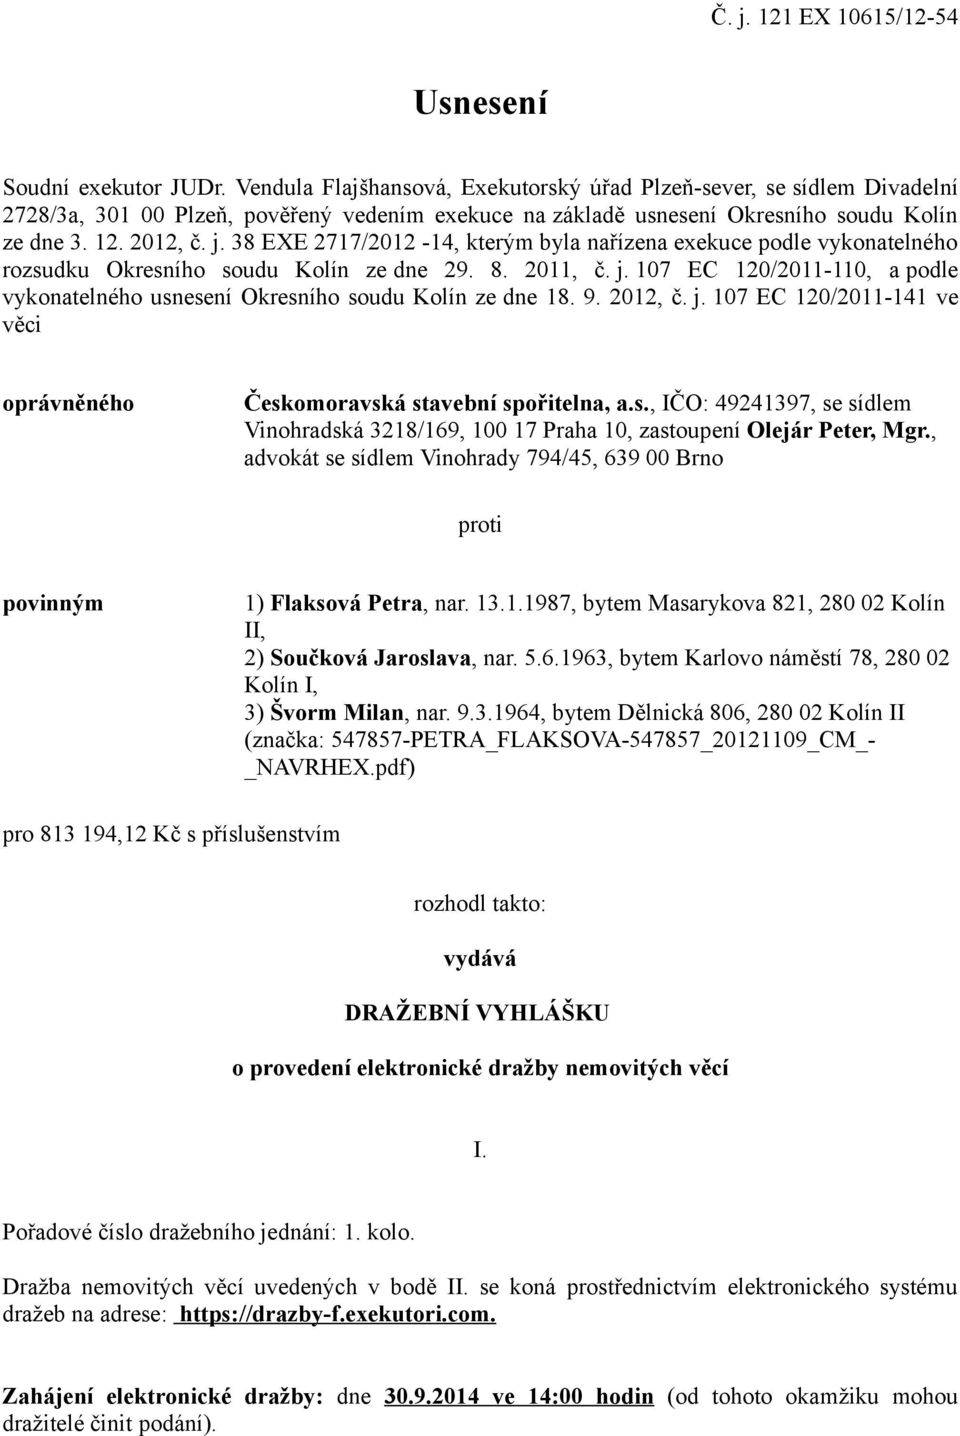 38 EXE 2717/2012-14, kterým byla nařízena exekuce podle vykonatelného rozsudku Okresního soudu Kolín ze dne 29. 8. 2011, č. j.